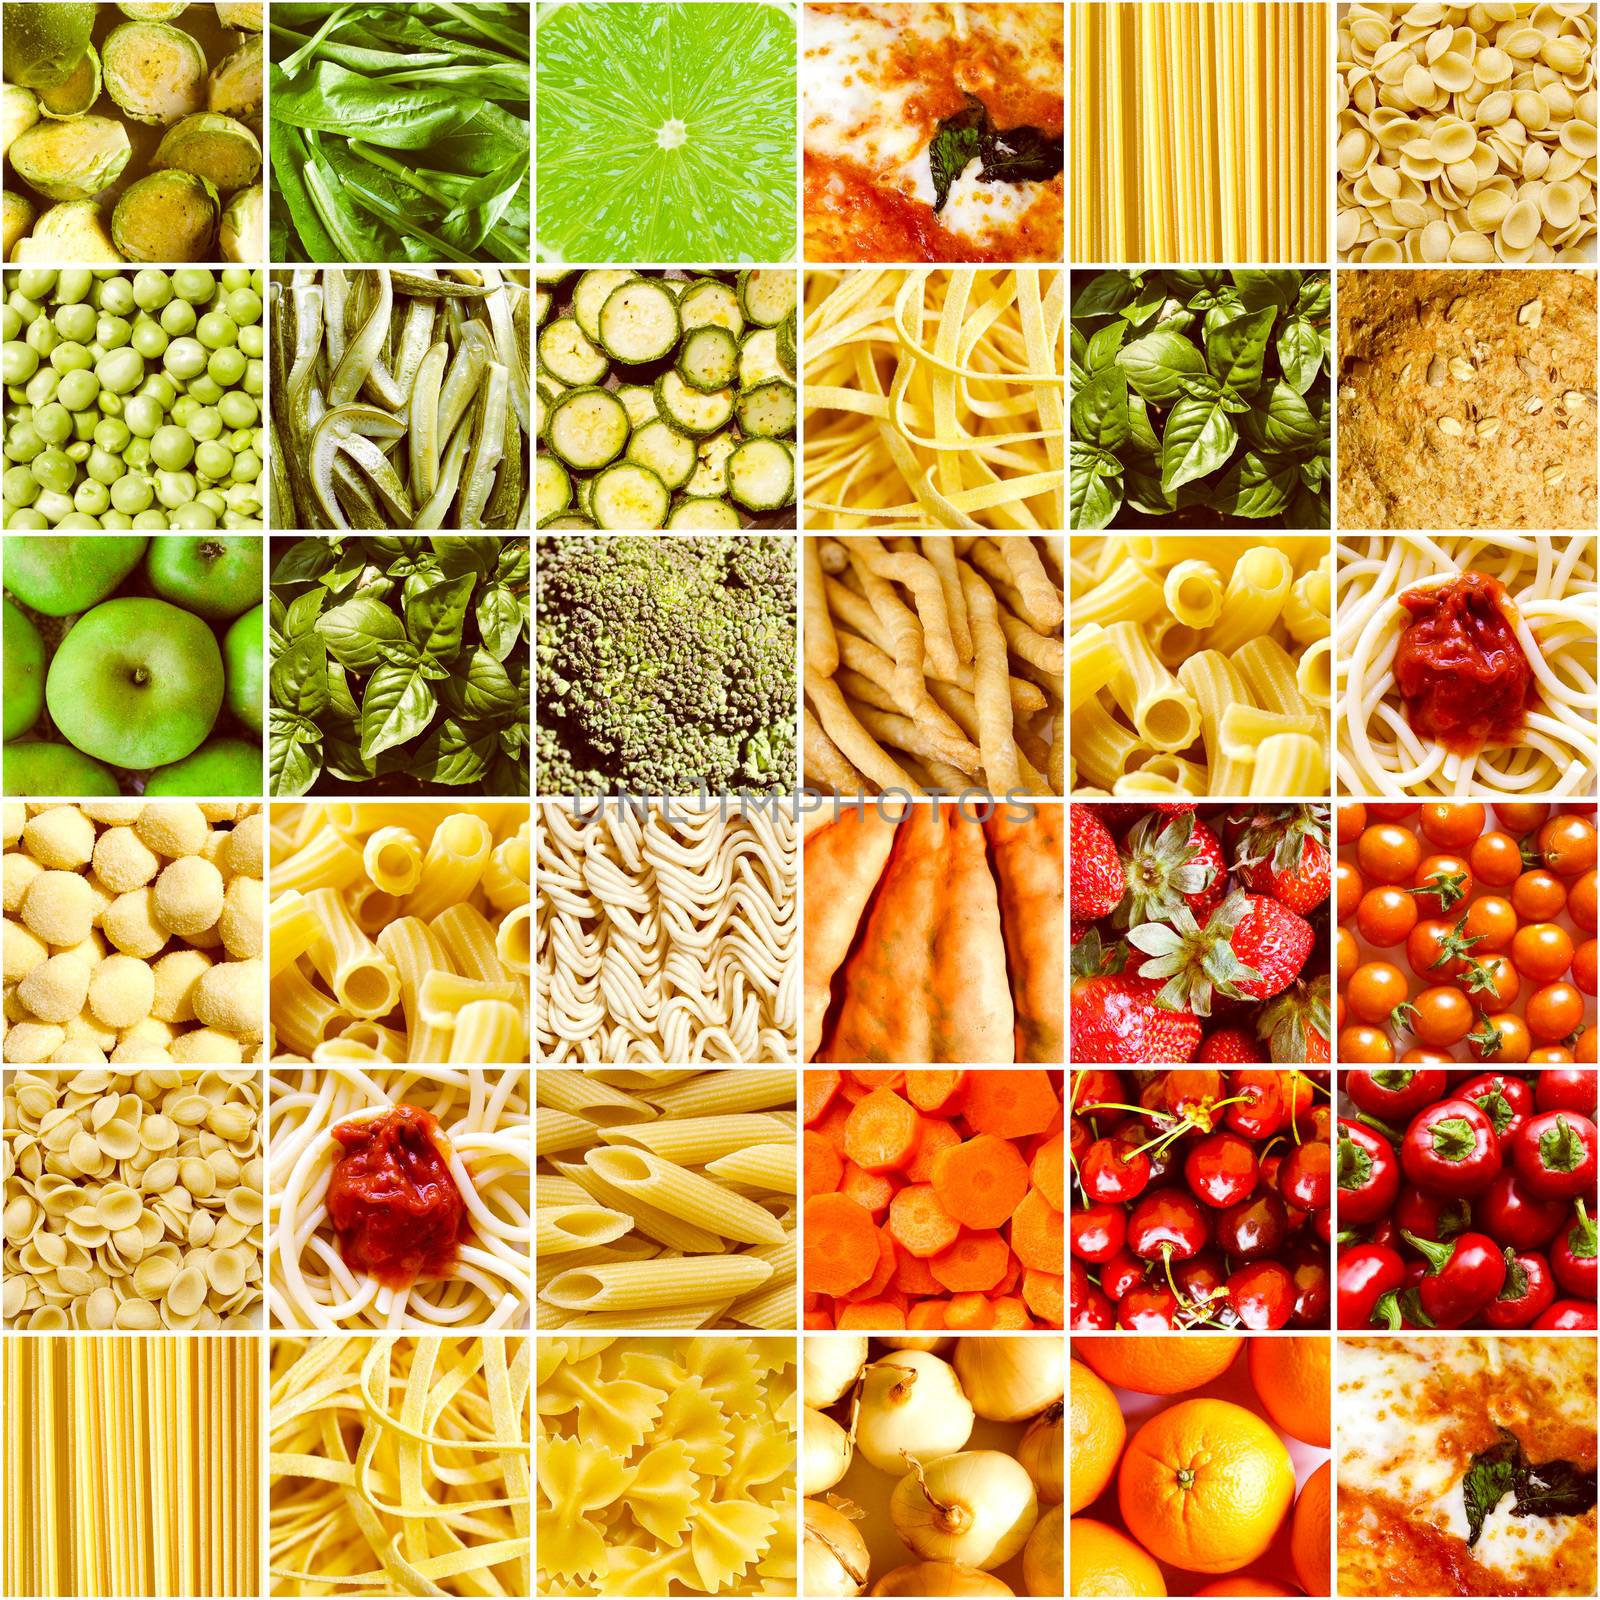 Retro look Food collage by claudiodivizia